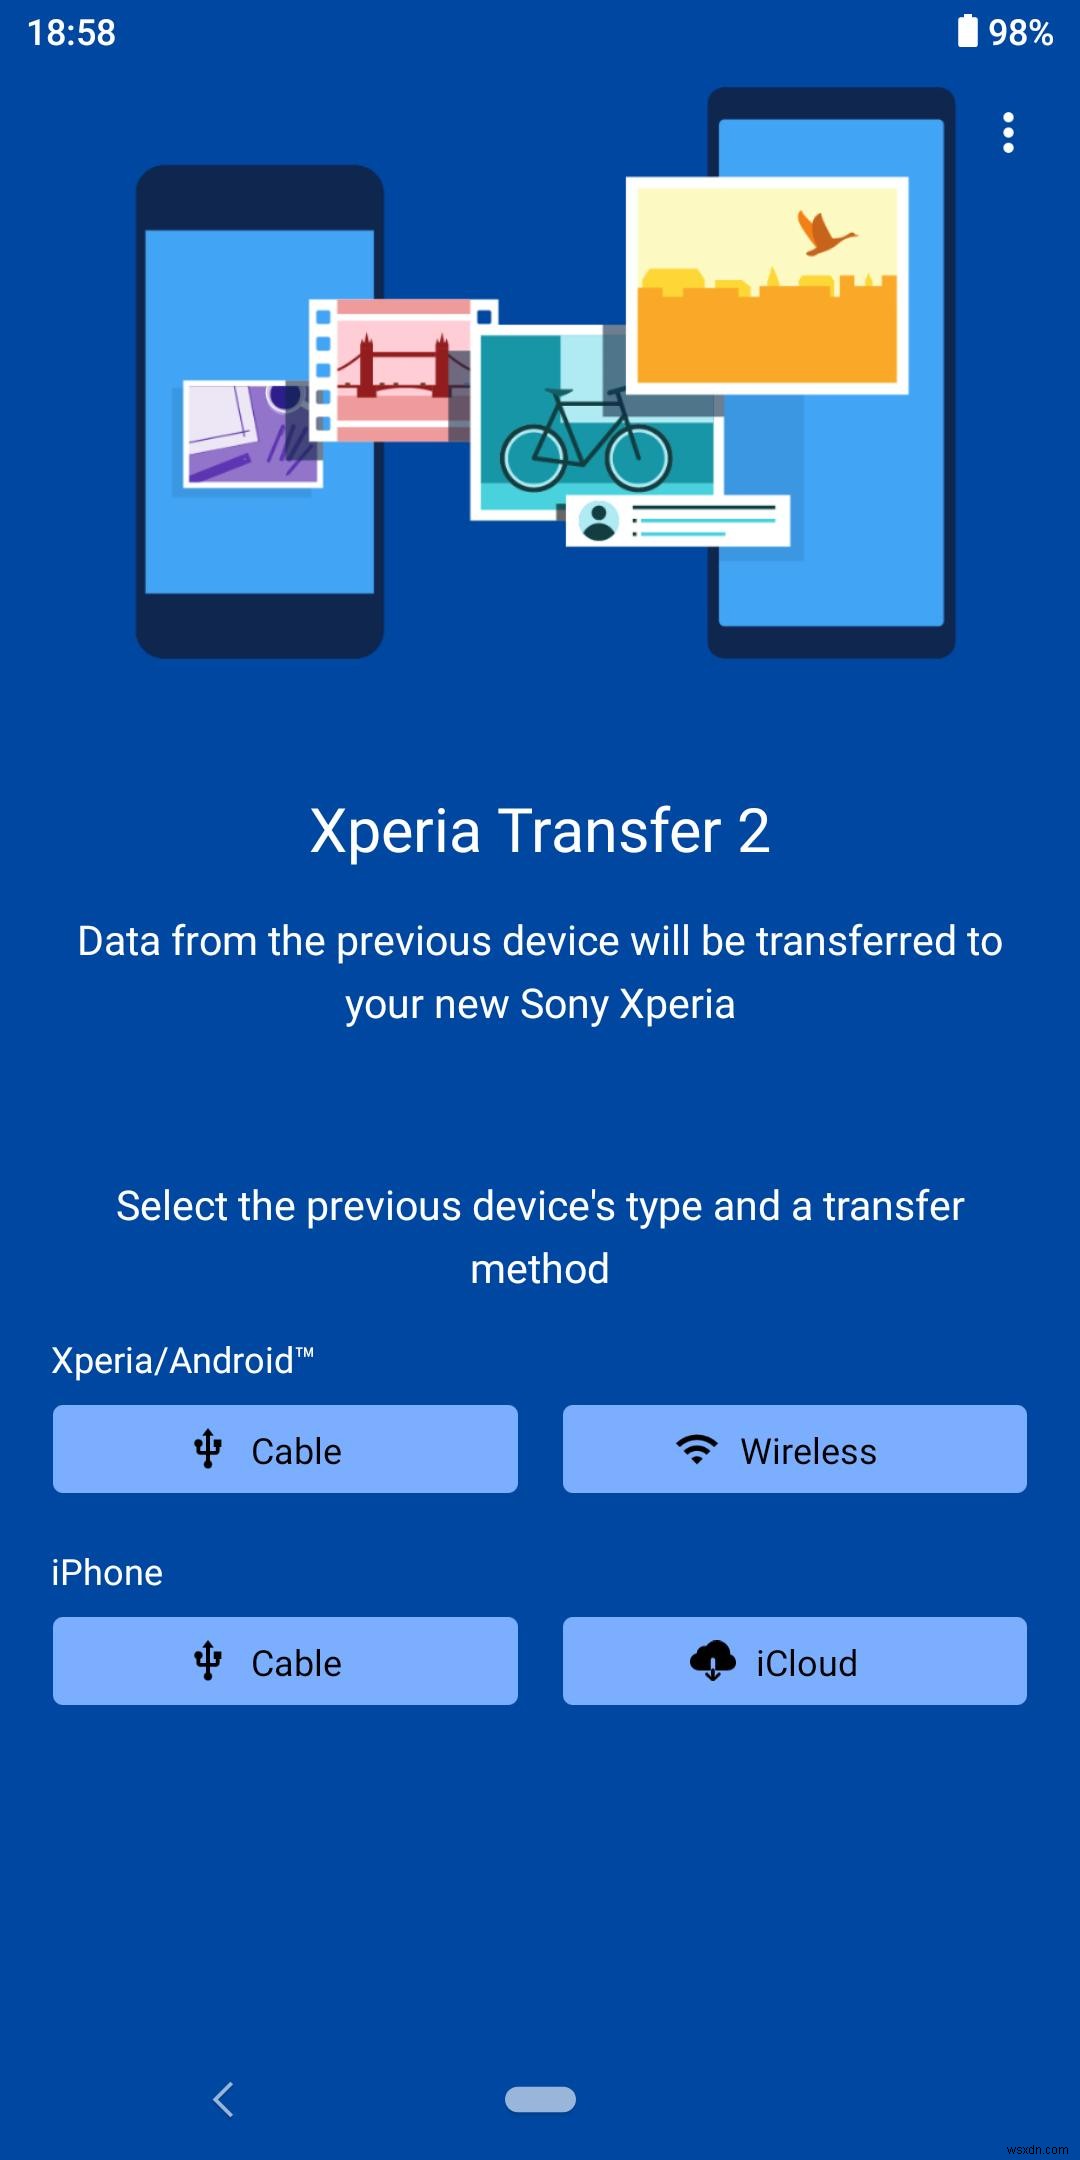 Làm thế nào để chuyển dữ liệu cho Sony Xperia? 